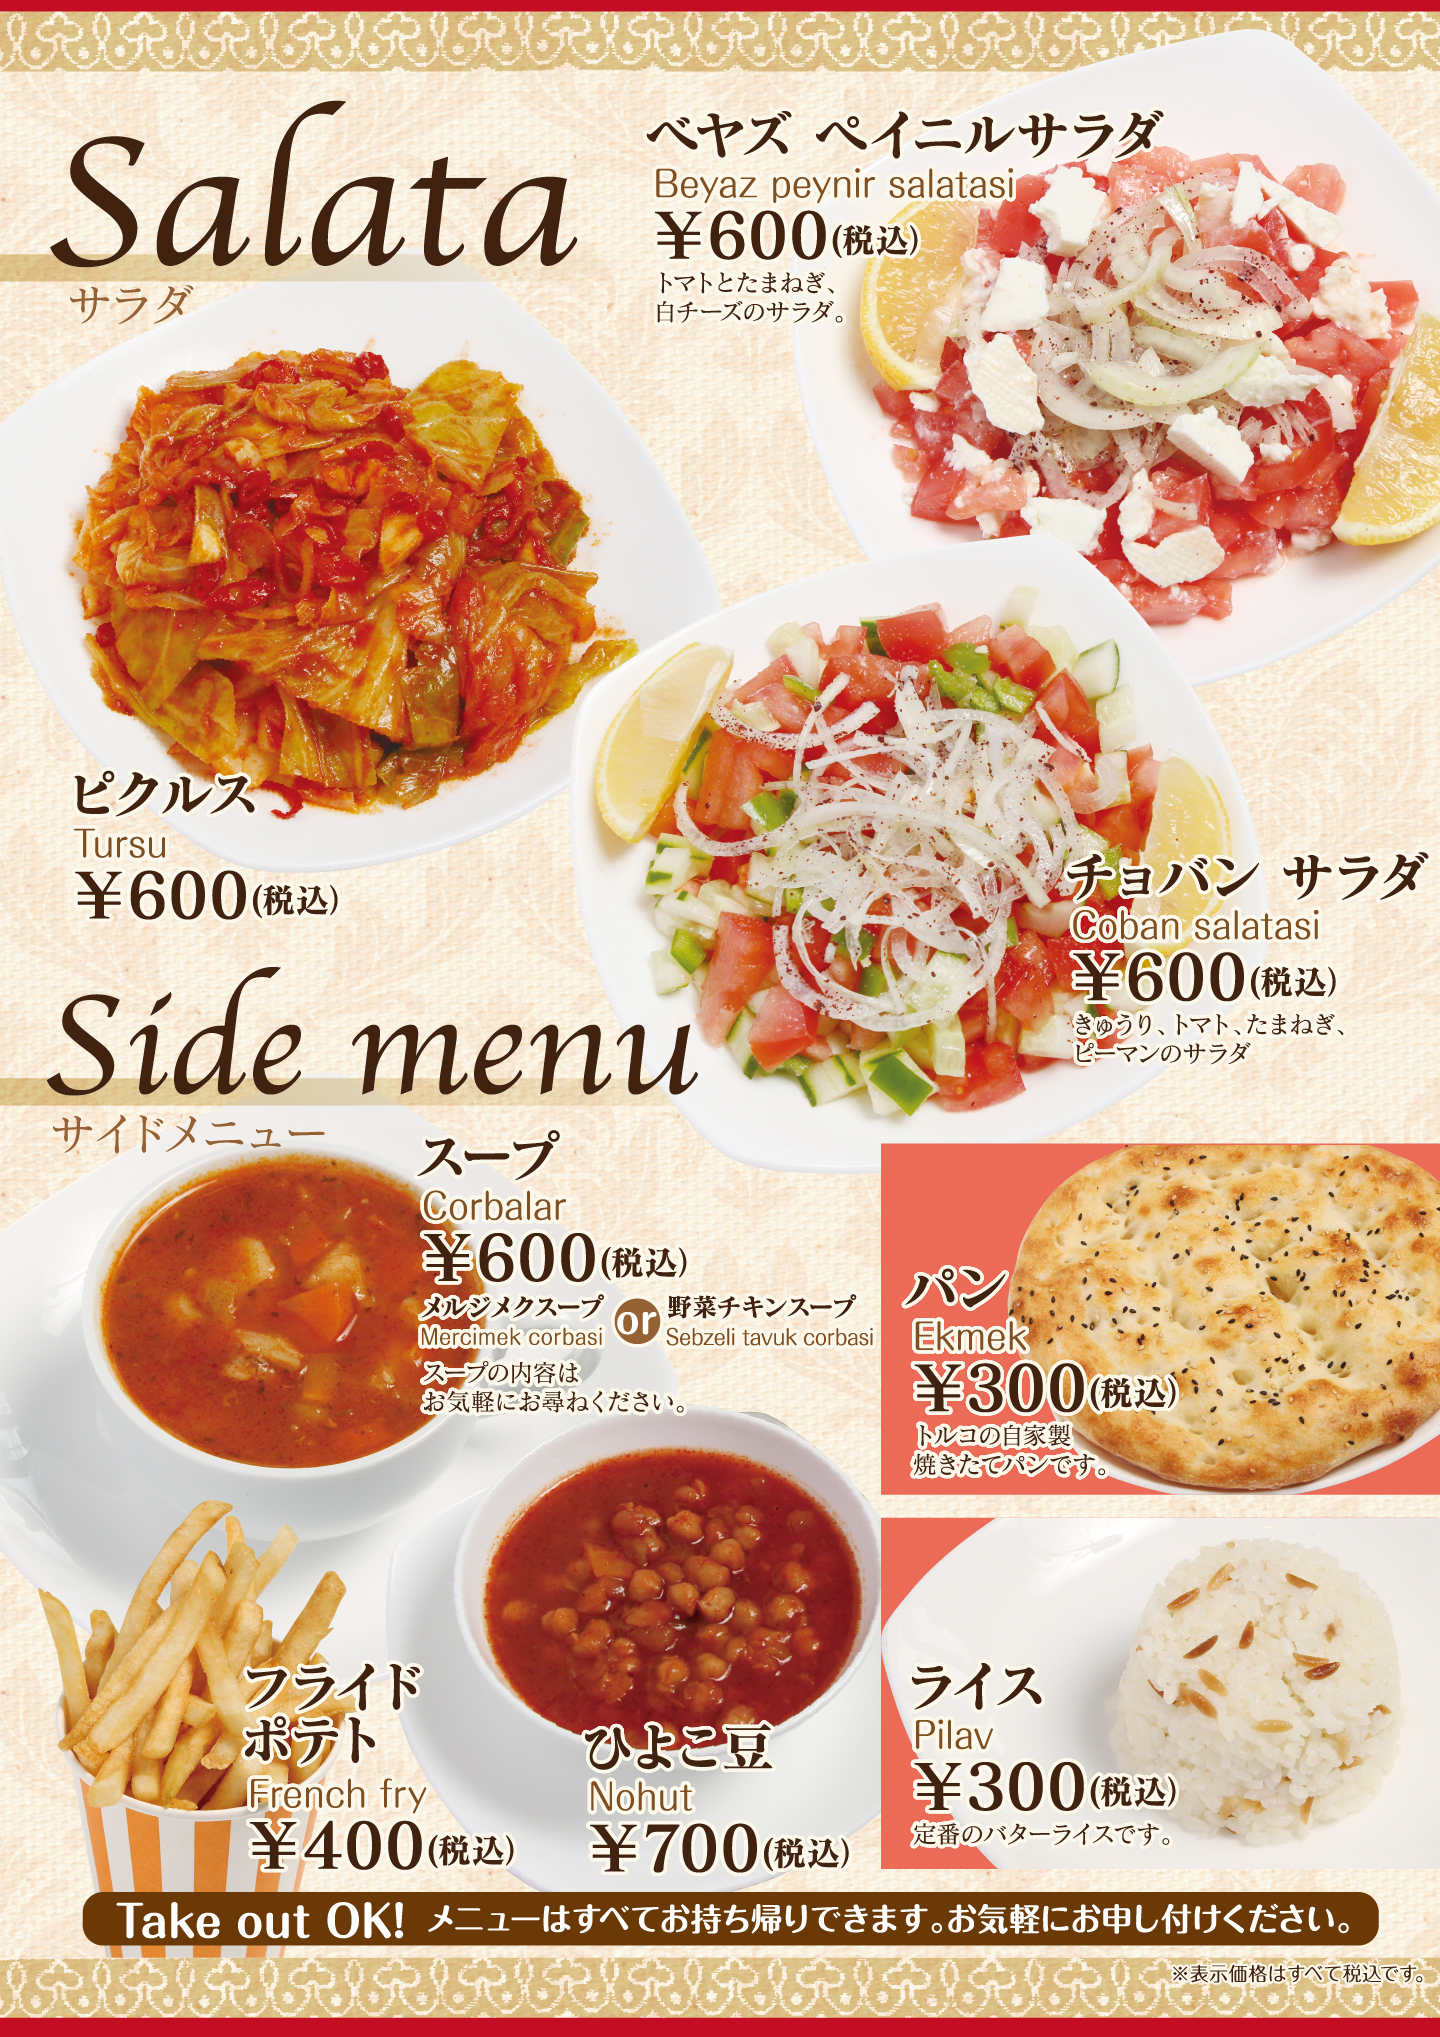 名古屋市中村区「本陣駅」すぐ近くにあるトルコ料理専門店「ターキッシュテイスト(TakishTaste)」のサラダとサイドメニューです。新鮮な野菜たっぷりのサラダやピクルス、ひよこ豆のスープなど。